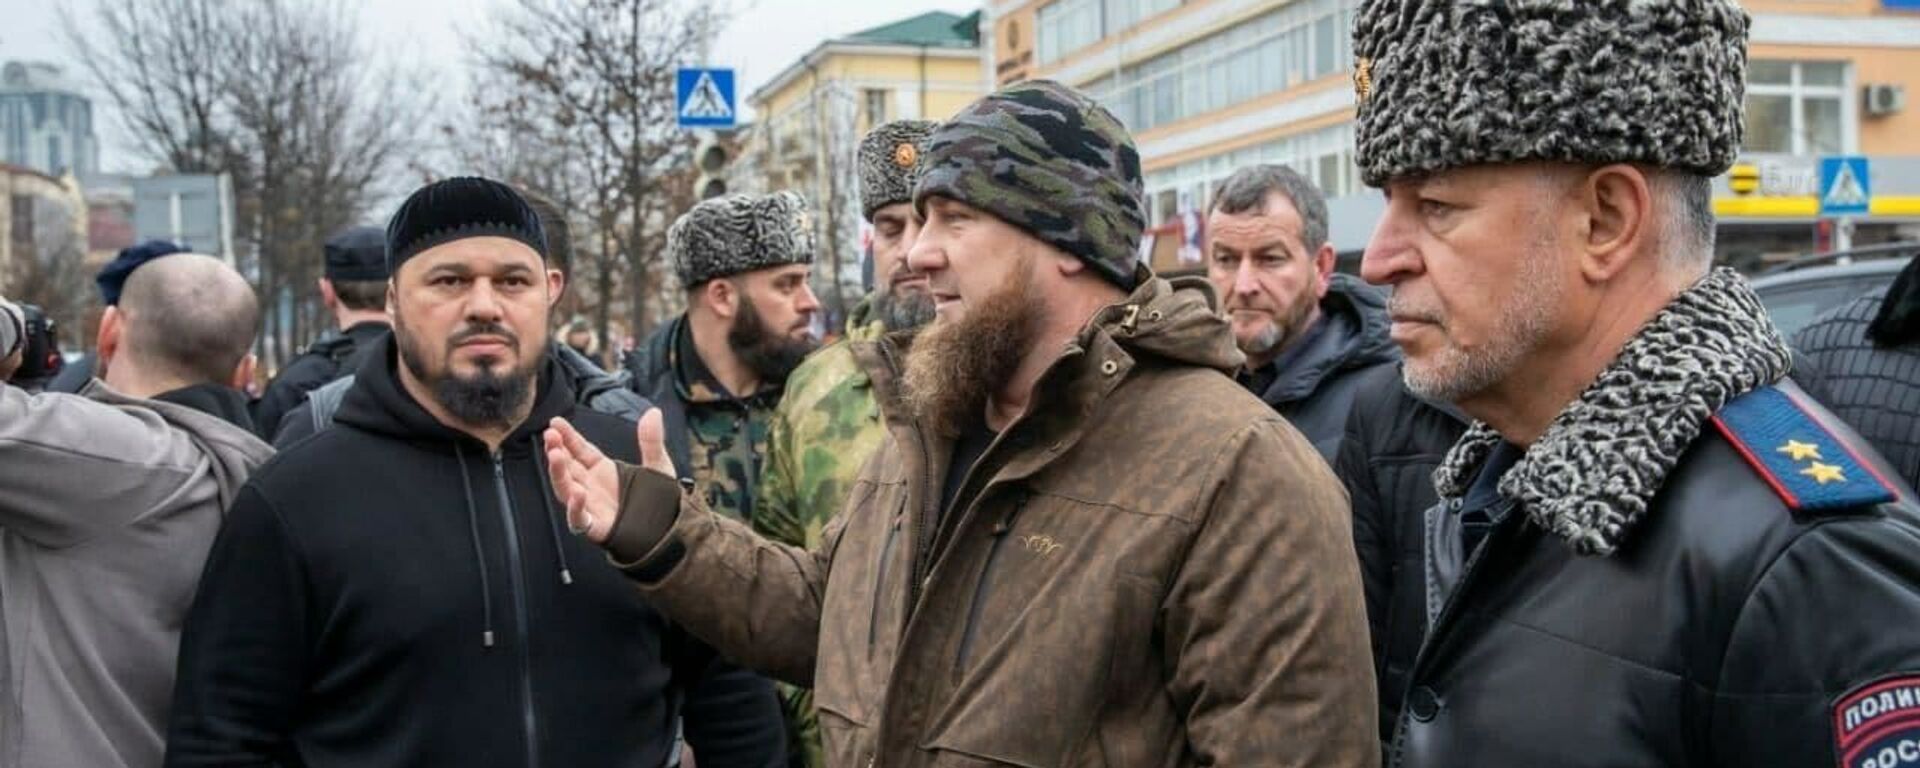 Người đứng đầu Chechnya, ông Ramzan Kadyrov đã đến hiện trường - Sputnik Việt Nam, 1920, 28.12.2020